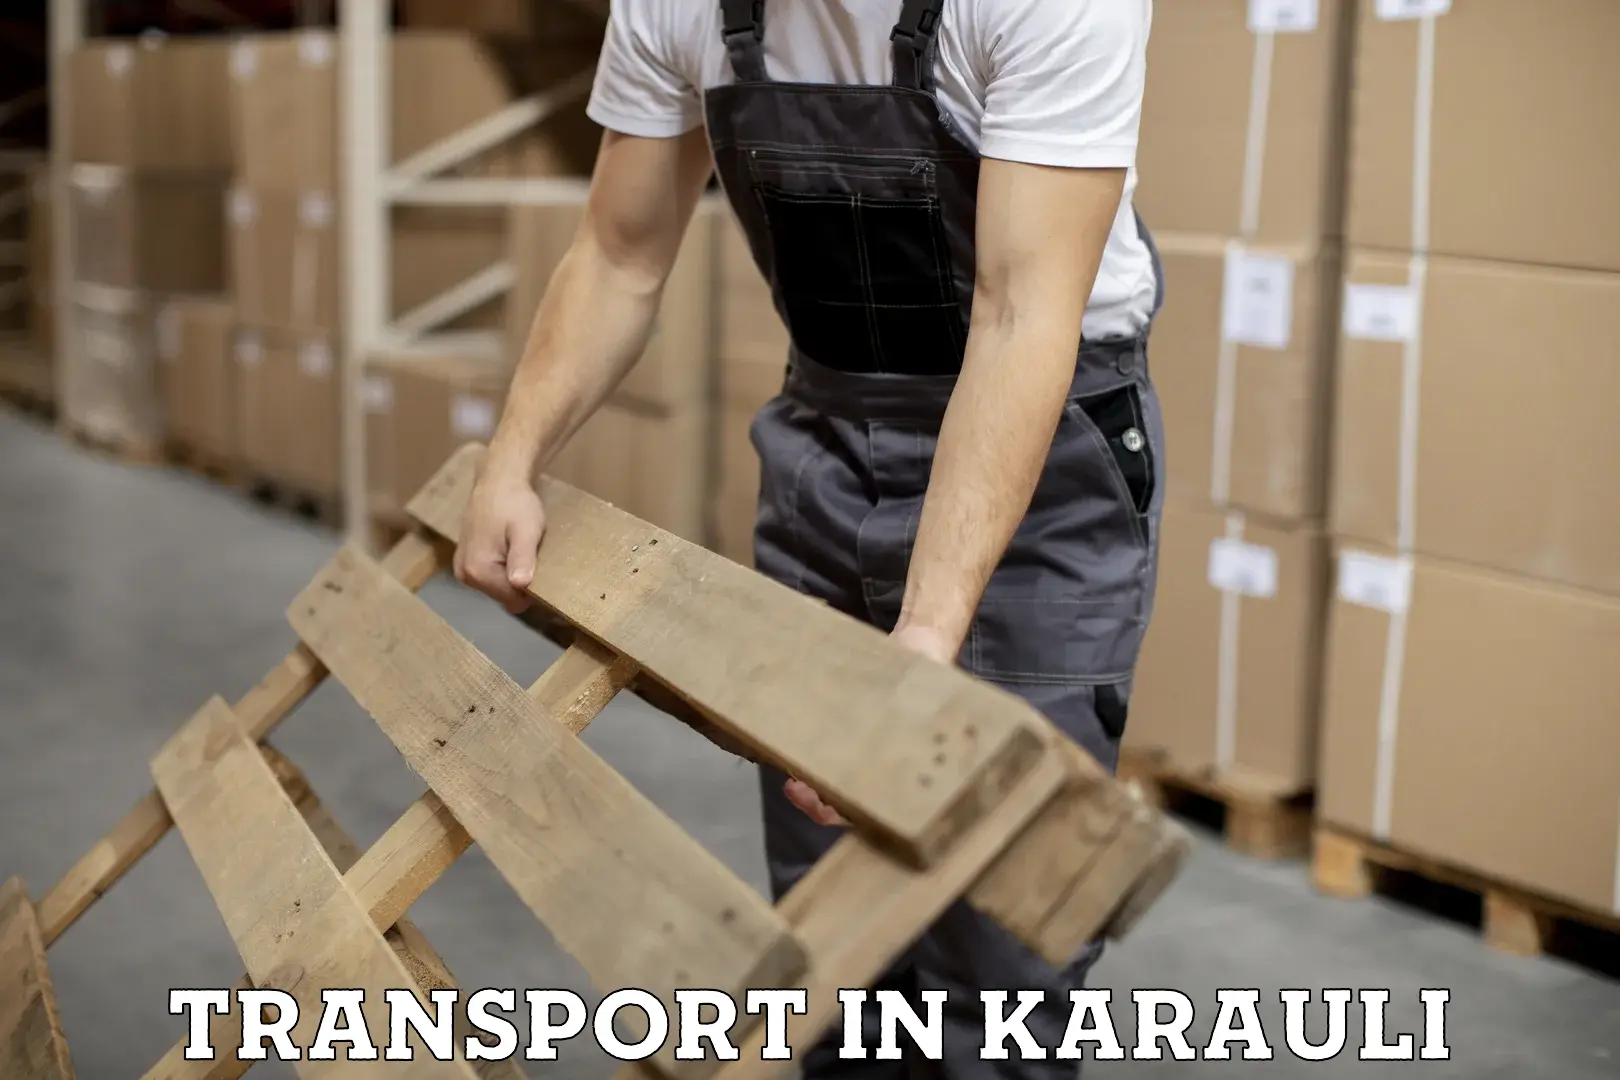 Interstate goods transport in Karauli